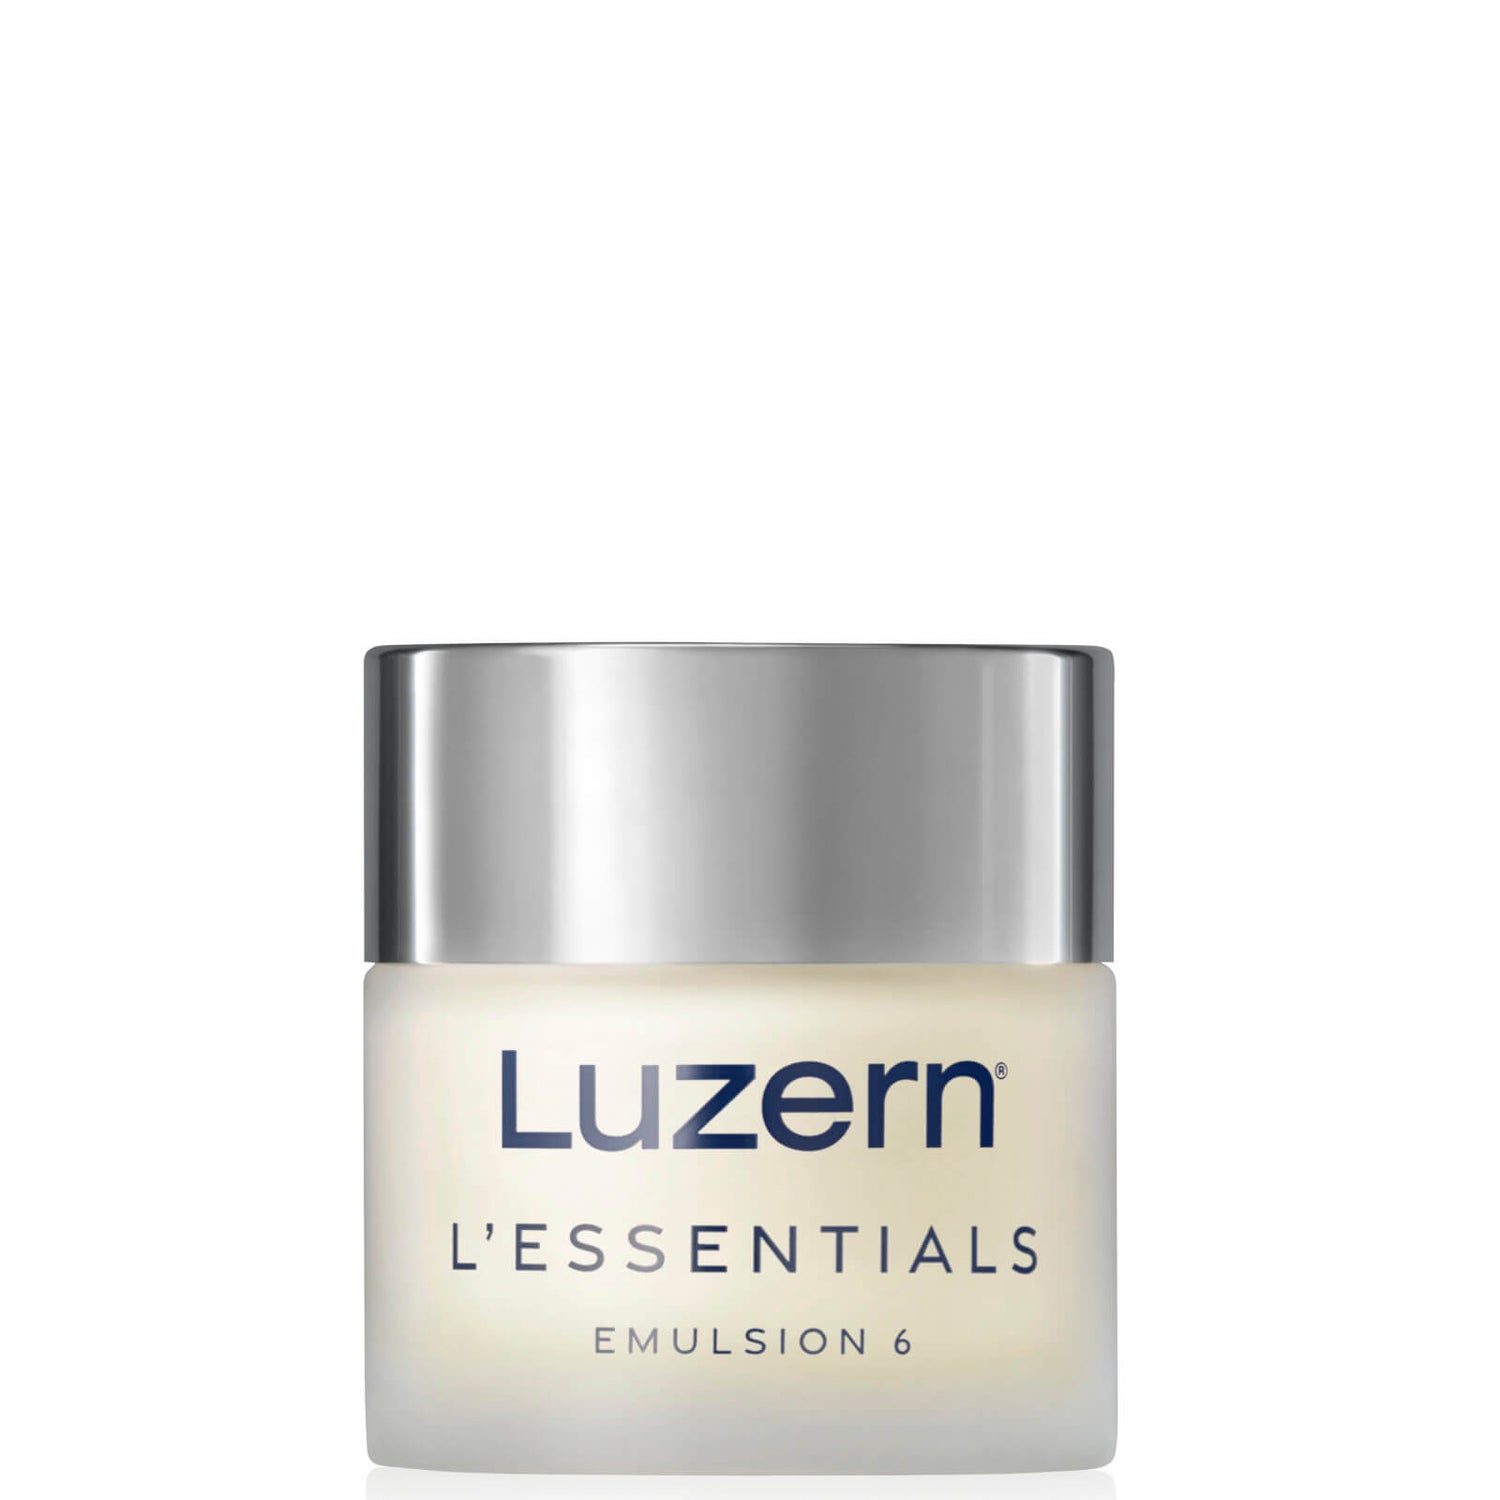  Luzern Laboratories Emulsion 6 3.4 fl. Oz